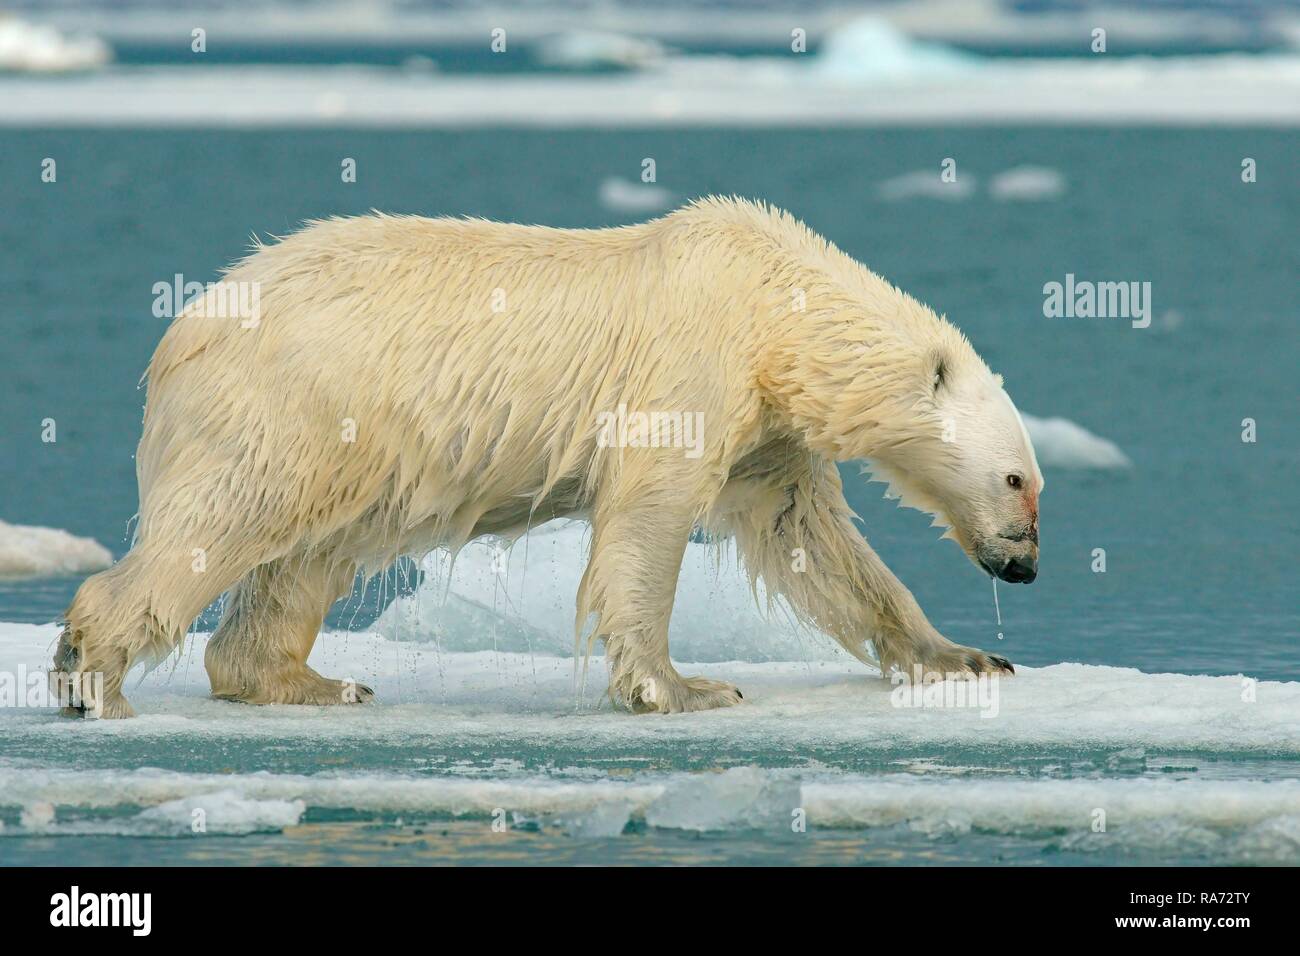 Eisbär (Ursus maritimus) läuft auf Eisscholle, Wasser tropft aus dem nassen Fell, in der norwegischen Arktis Svalbard, Norwegen Stockfoto